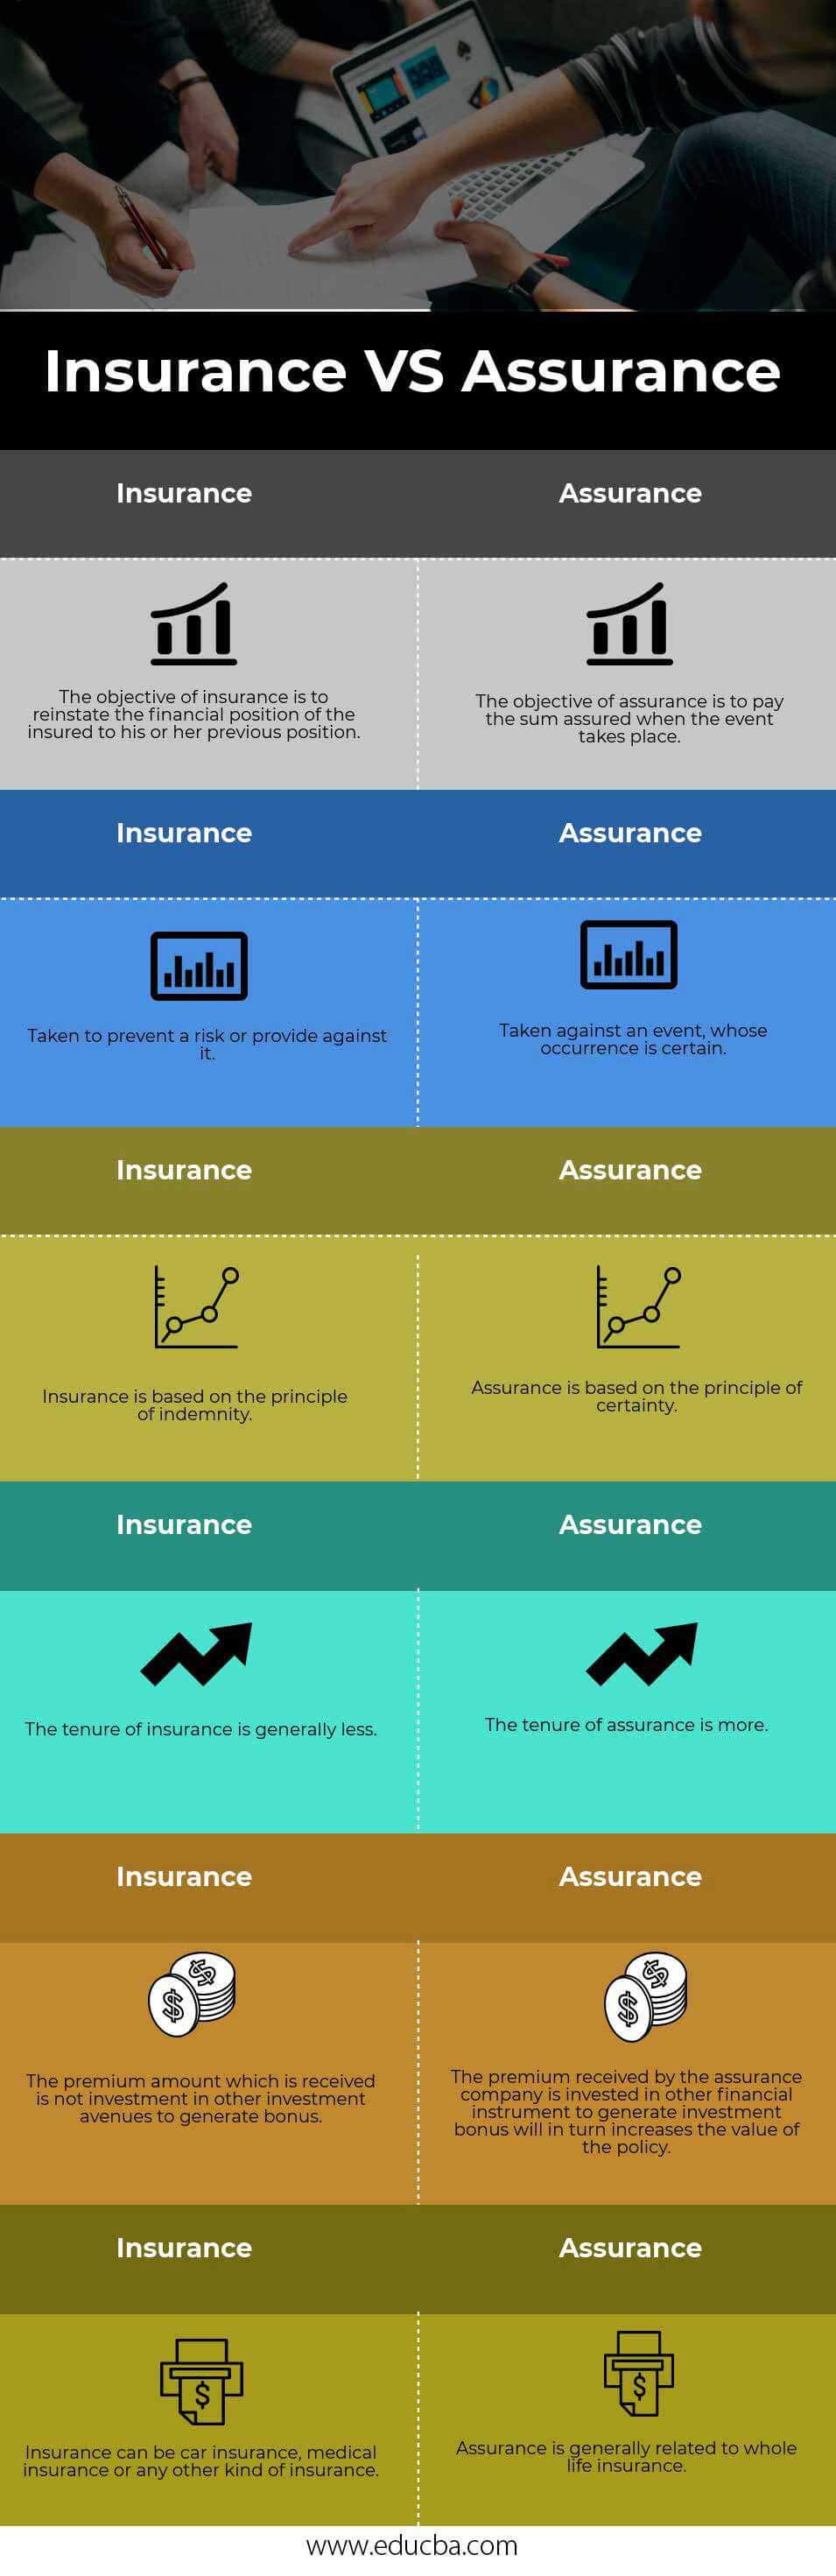 Insurance VS Assurance info